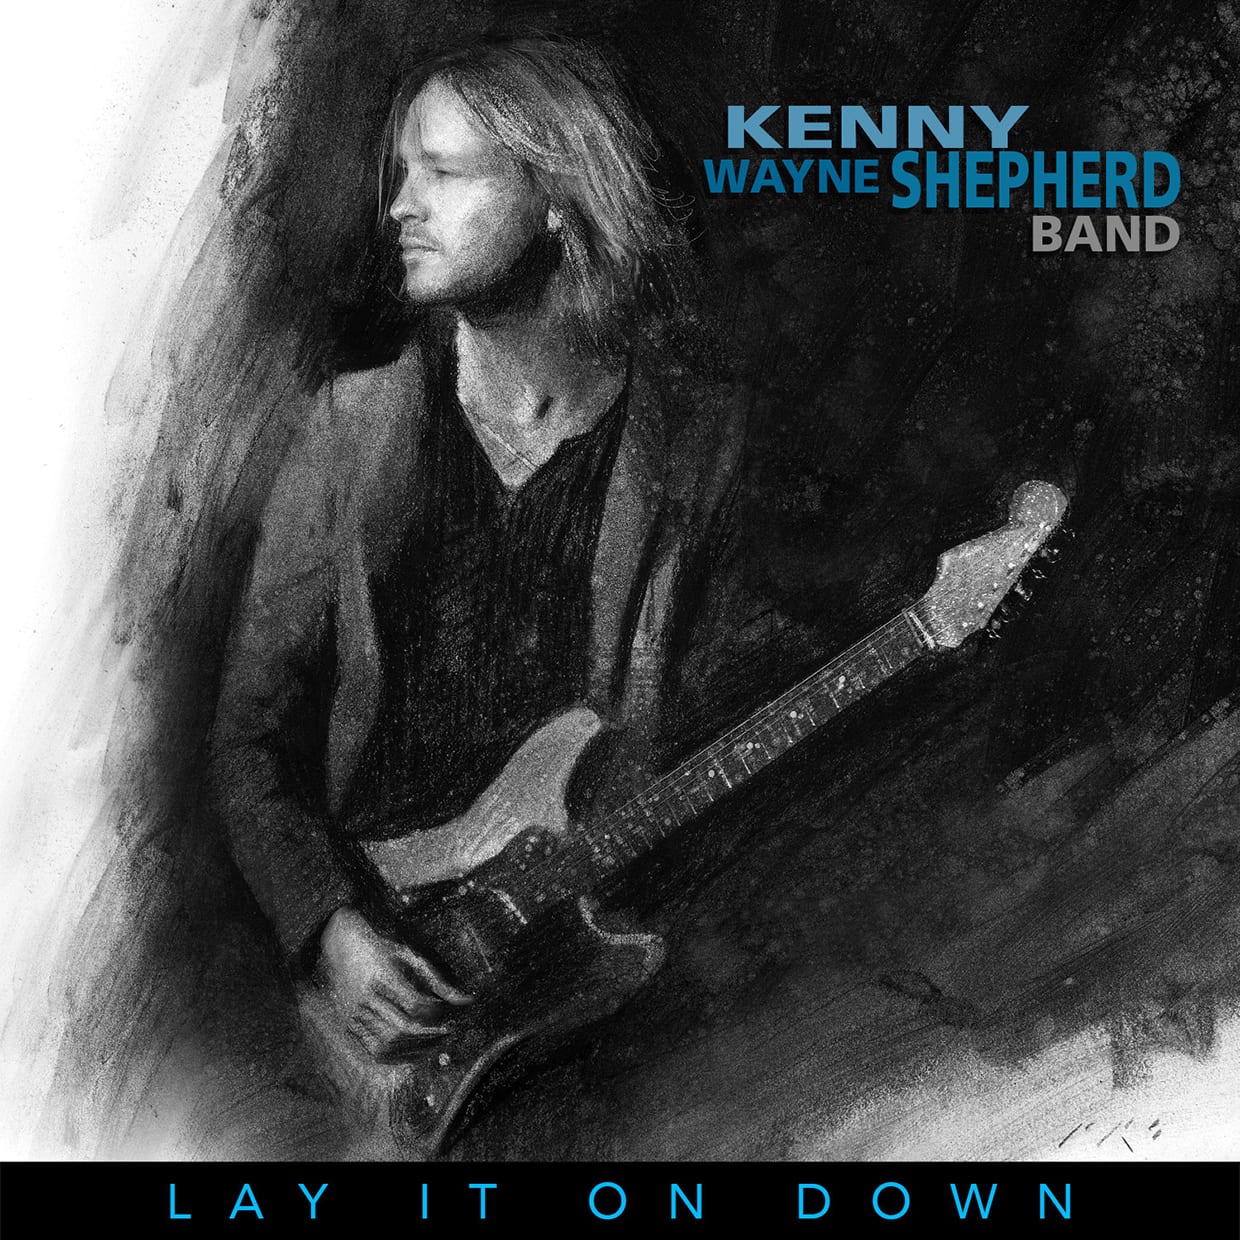 Kenny Wayne Shepherd Band – Lay it on Down